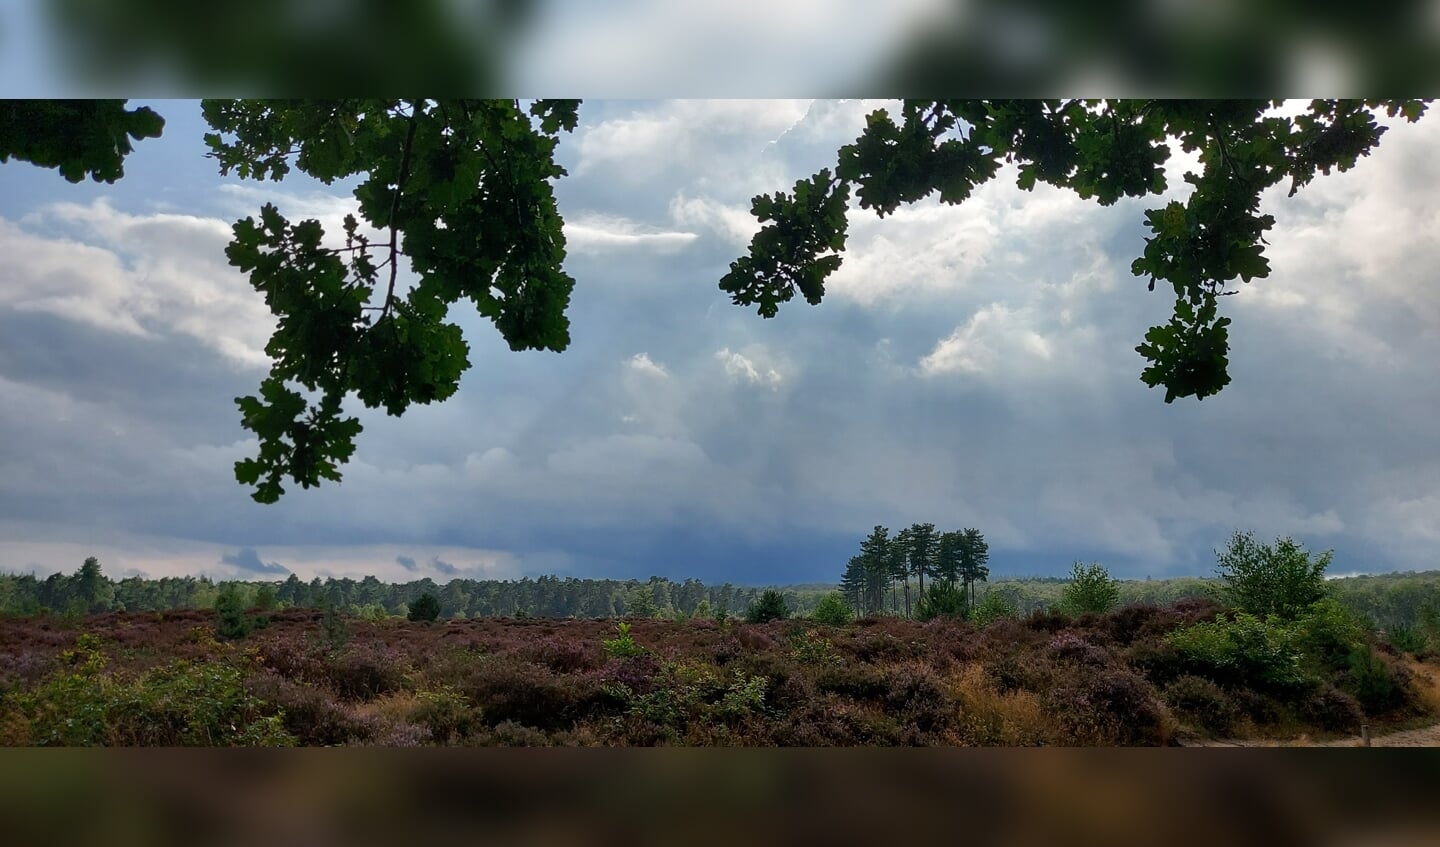 De foto is afgelopen 22 augustus gemaakt tijdens een wandeling in Den Treek van de bloeiende heide. Zon, prachtige wolkenpartijen en een beetje regen vergezelde ons tijdens een heerlijke wandeling.